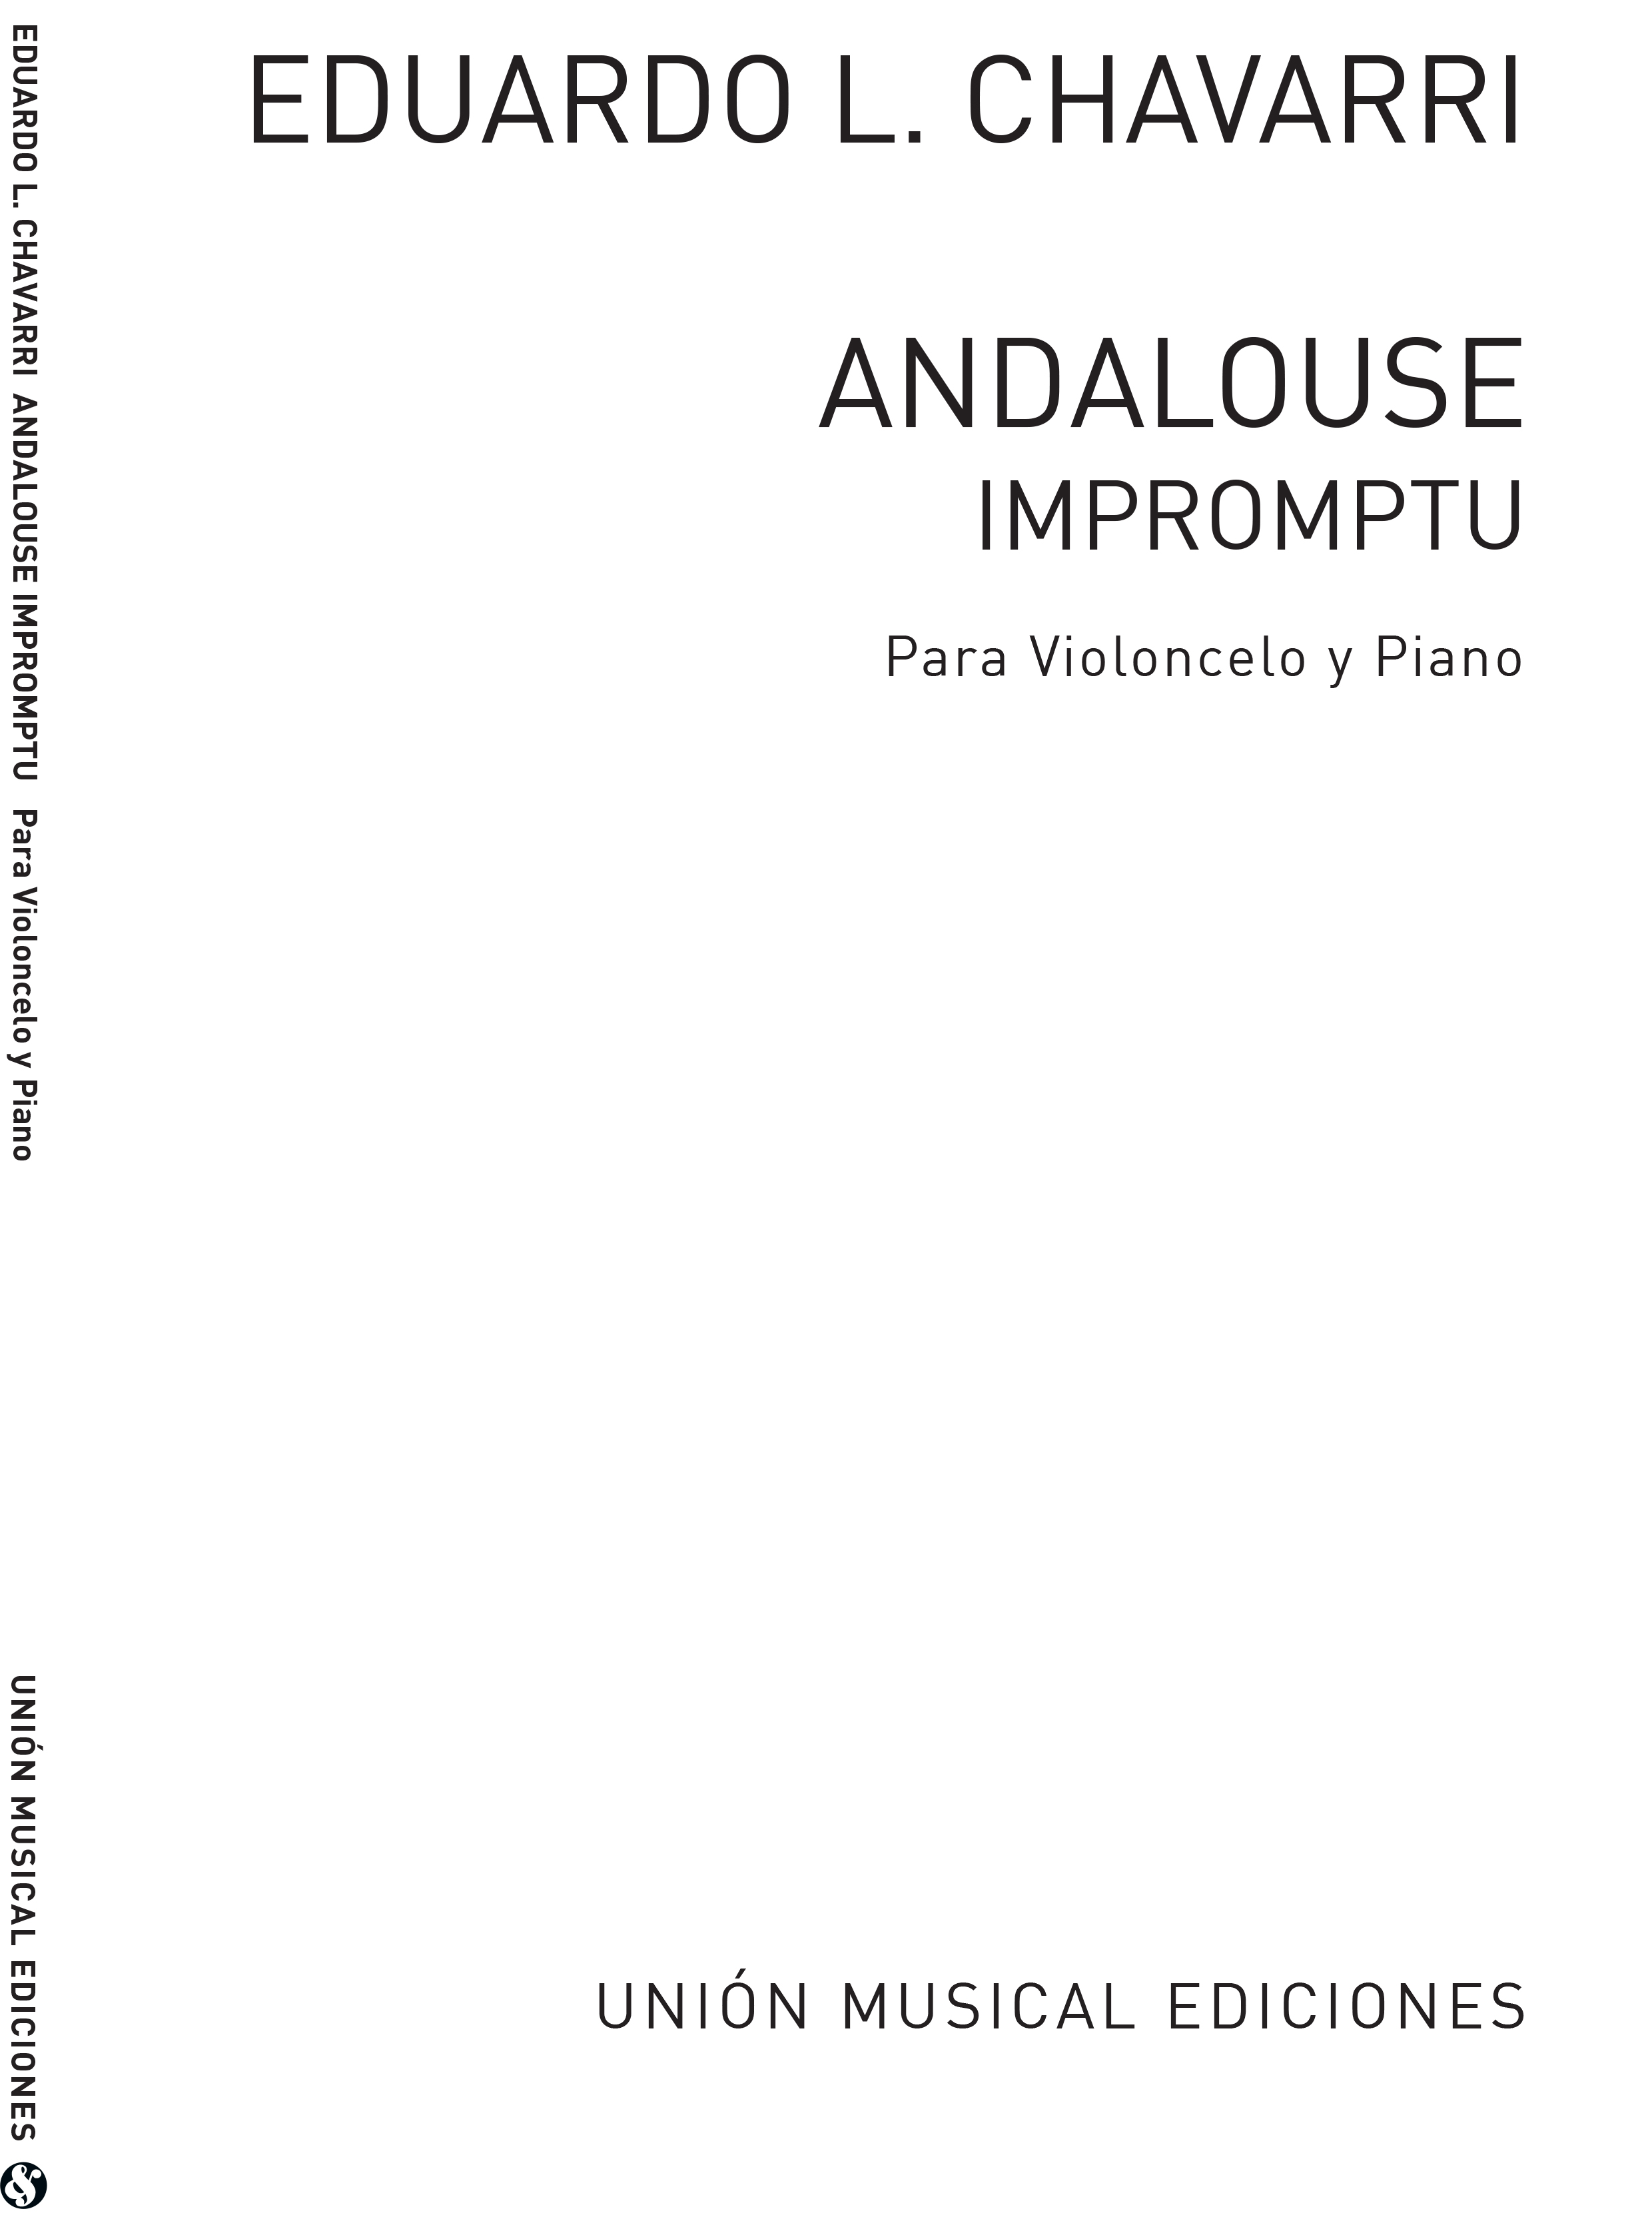 Eduardo Lopez-Chavarri: Andalouse Impromptu: Cello: Instrumental Work